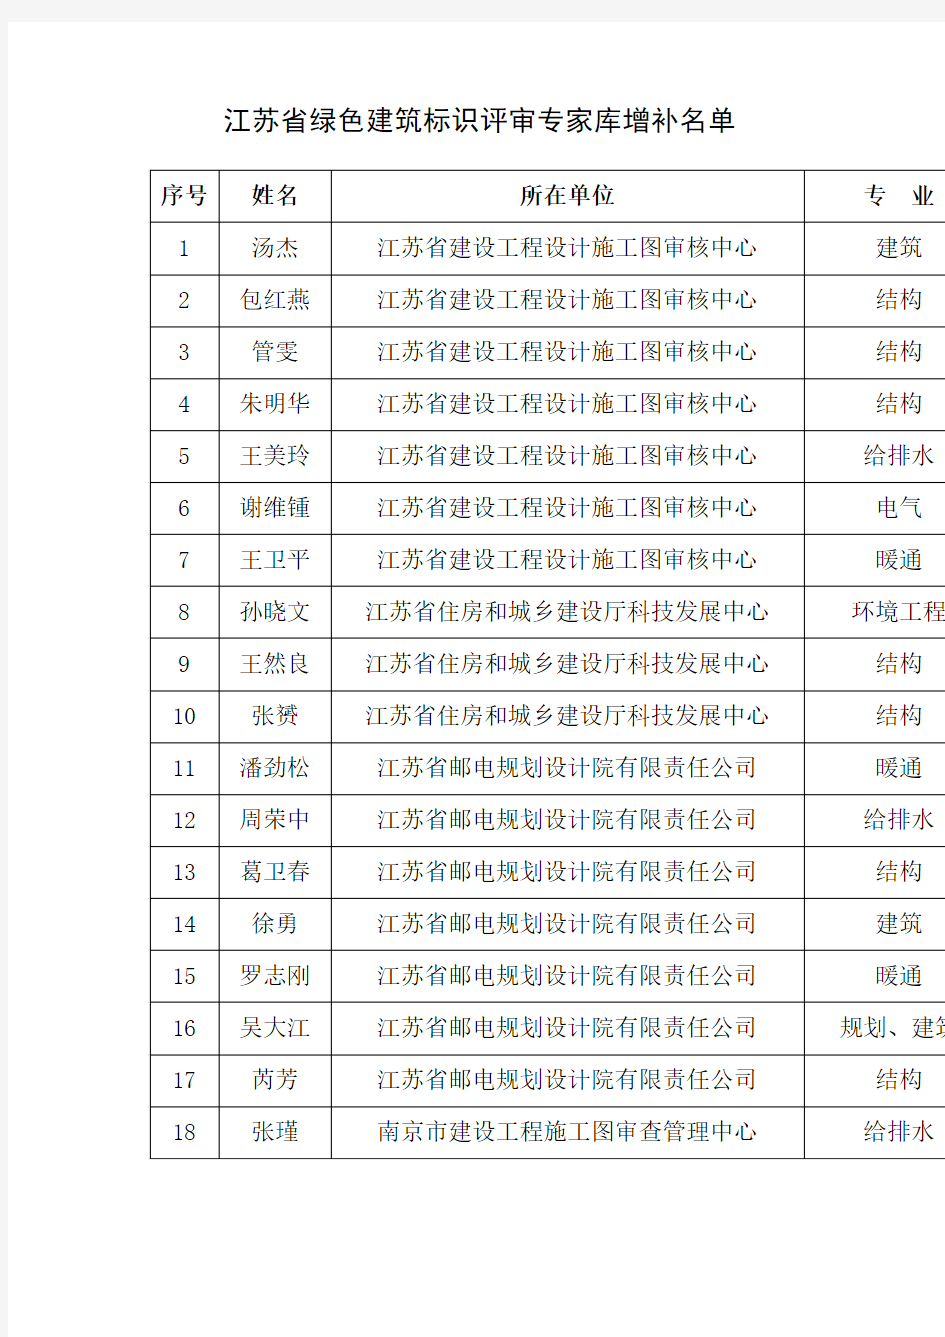 江苏省绿色建筑标识评审专家库增补名单